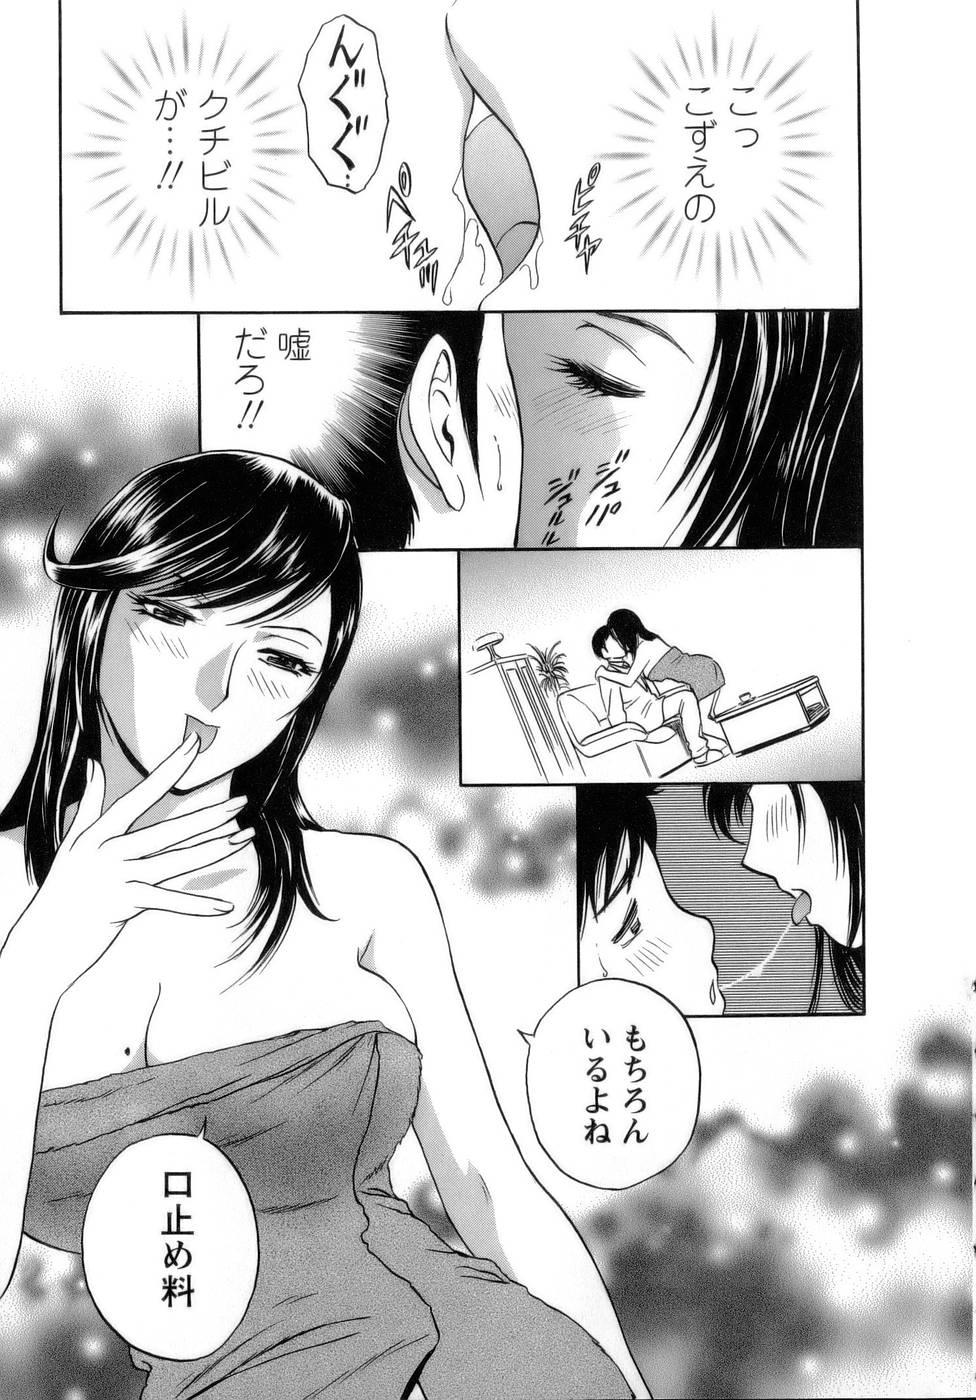 [Hidemaru] Mo-Retsu! Boin Sensei (Boing Boing Teacher) Vol.1 84